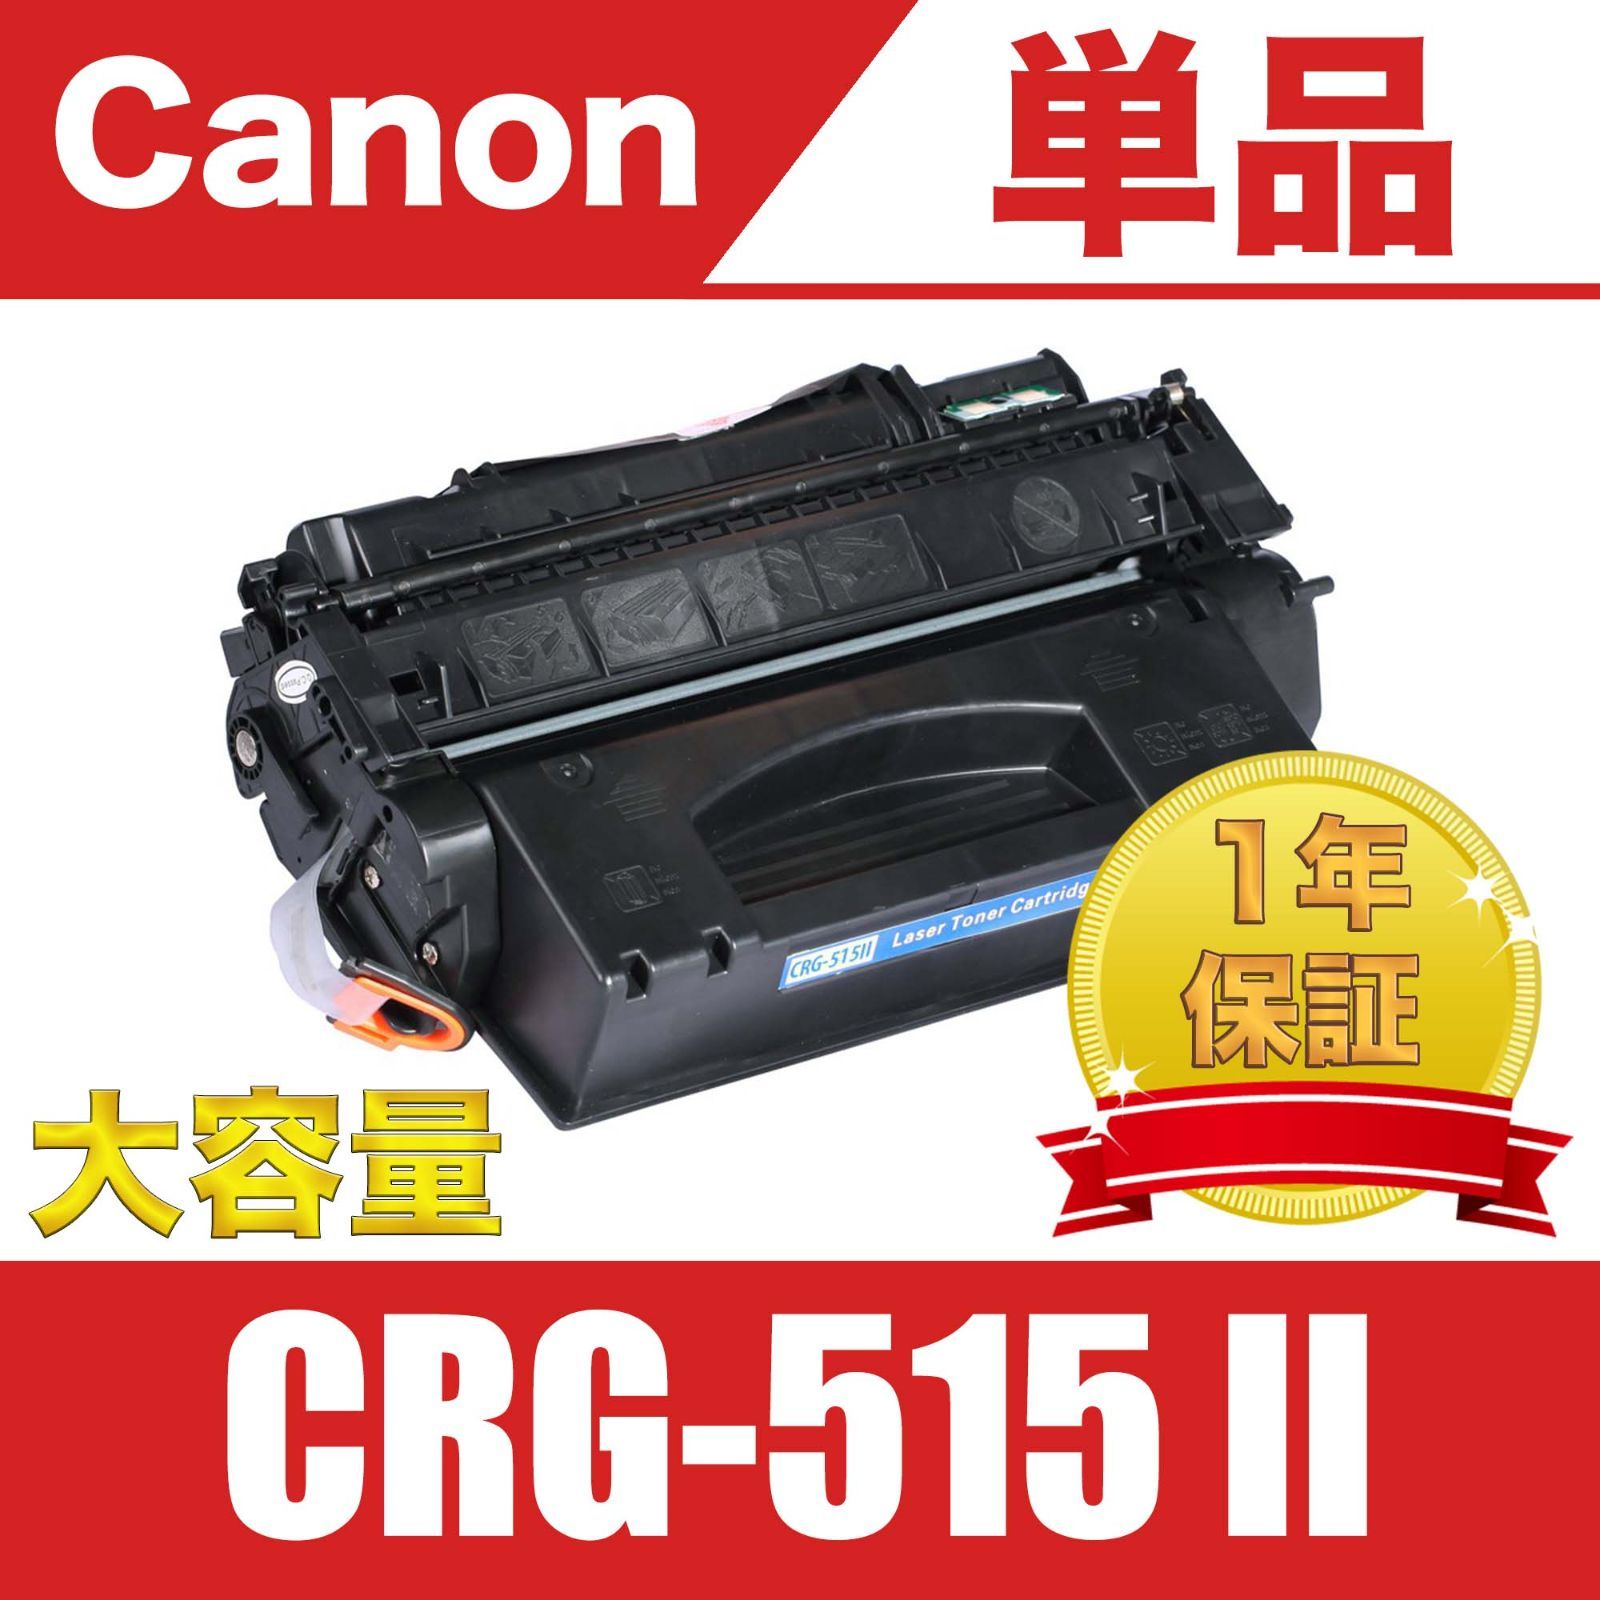 Canon トナーカートリッジ CRG-515Ⅱ